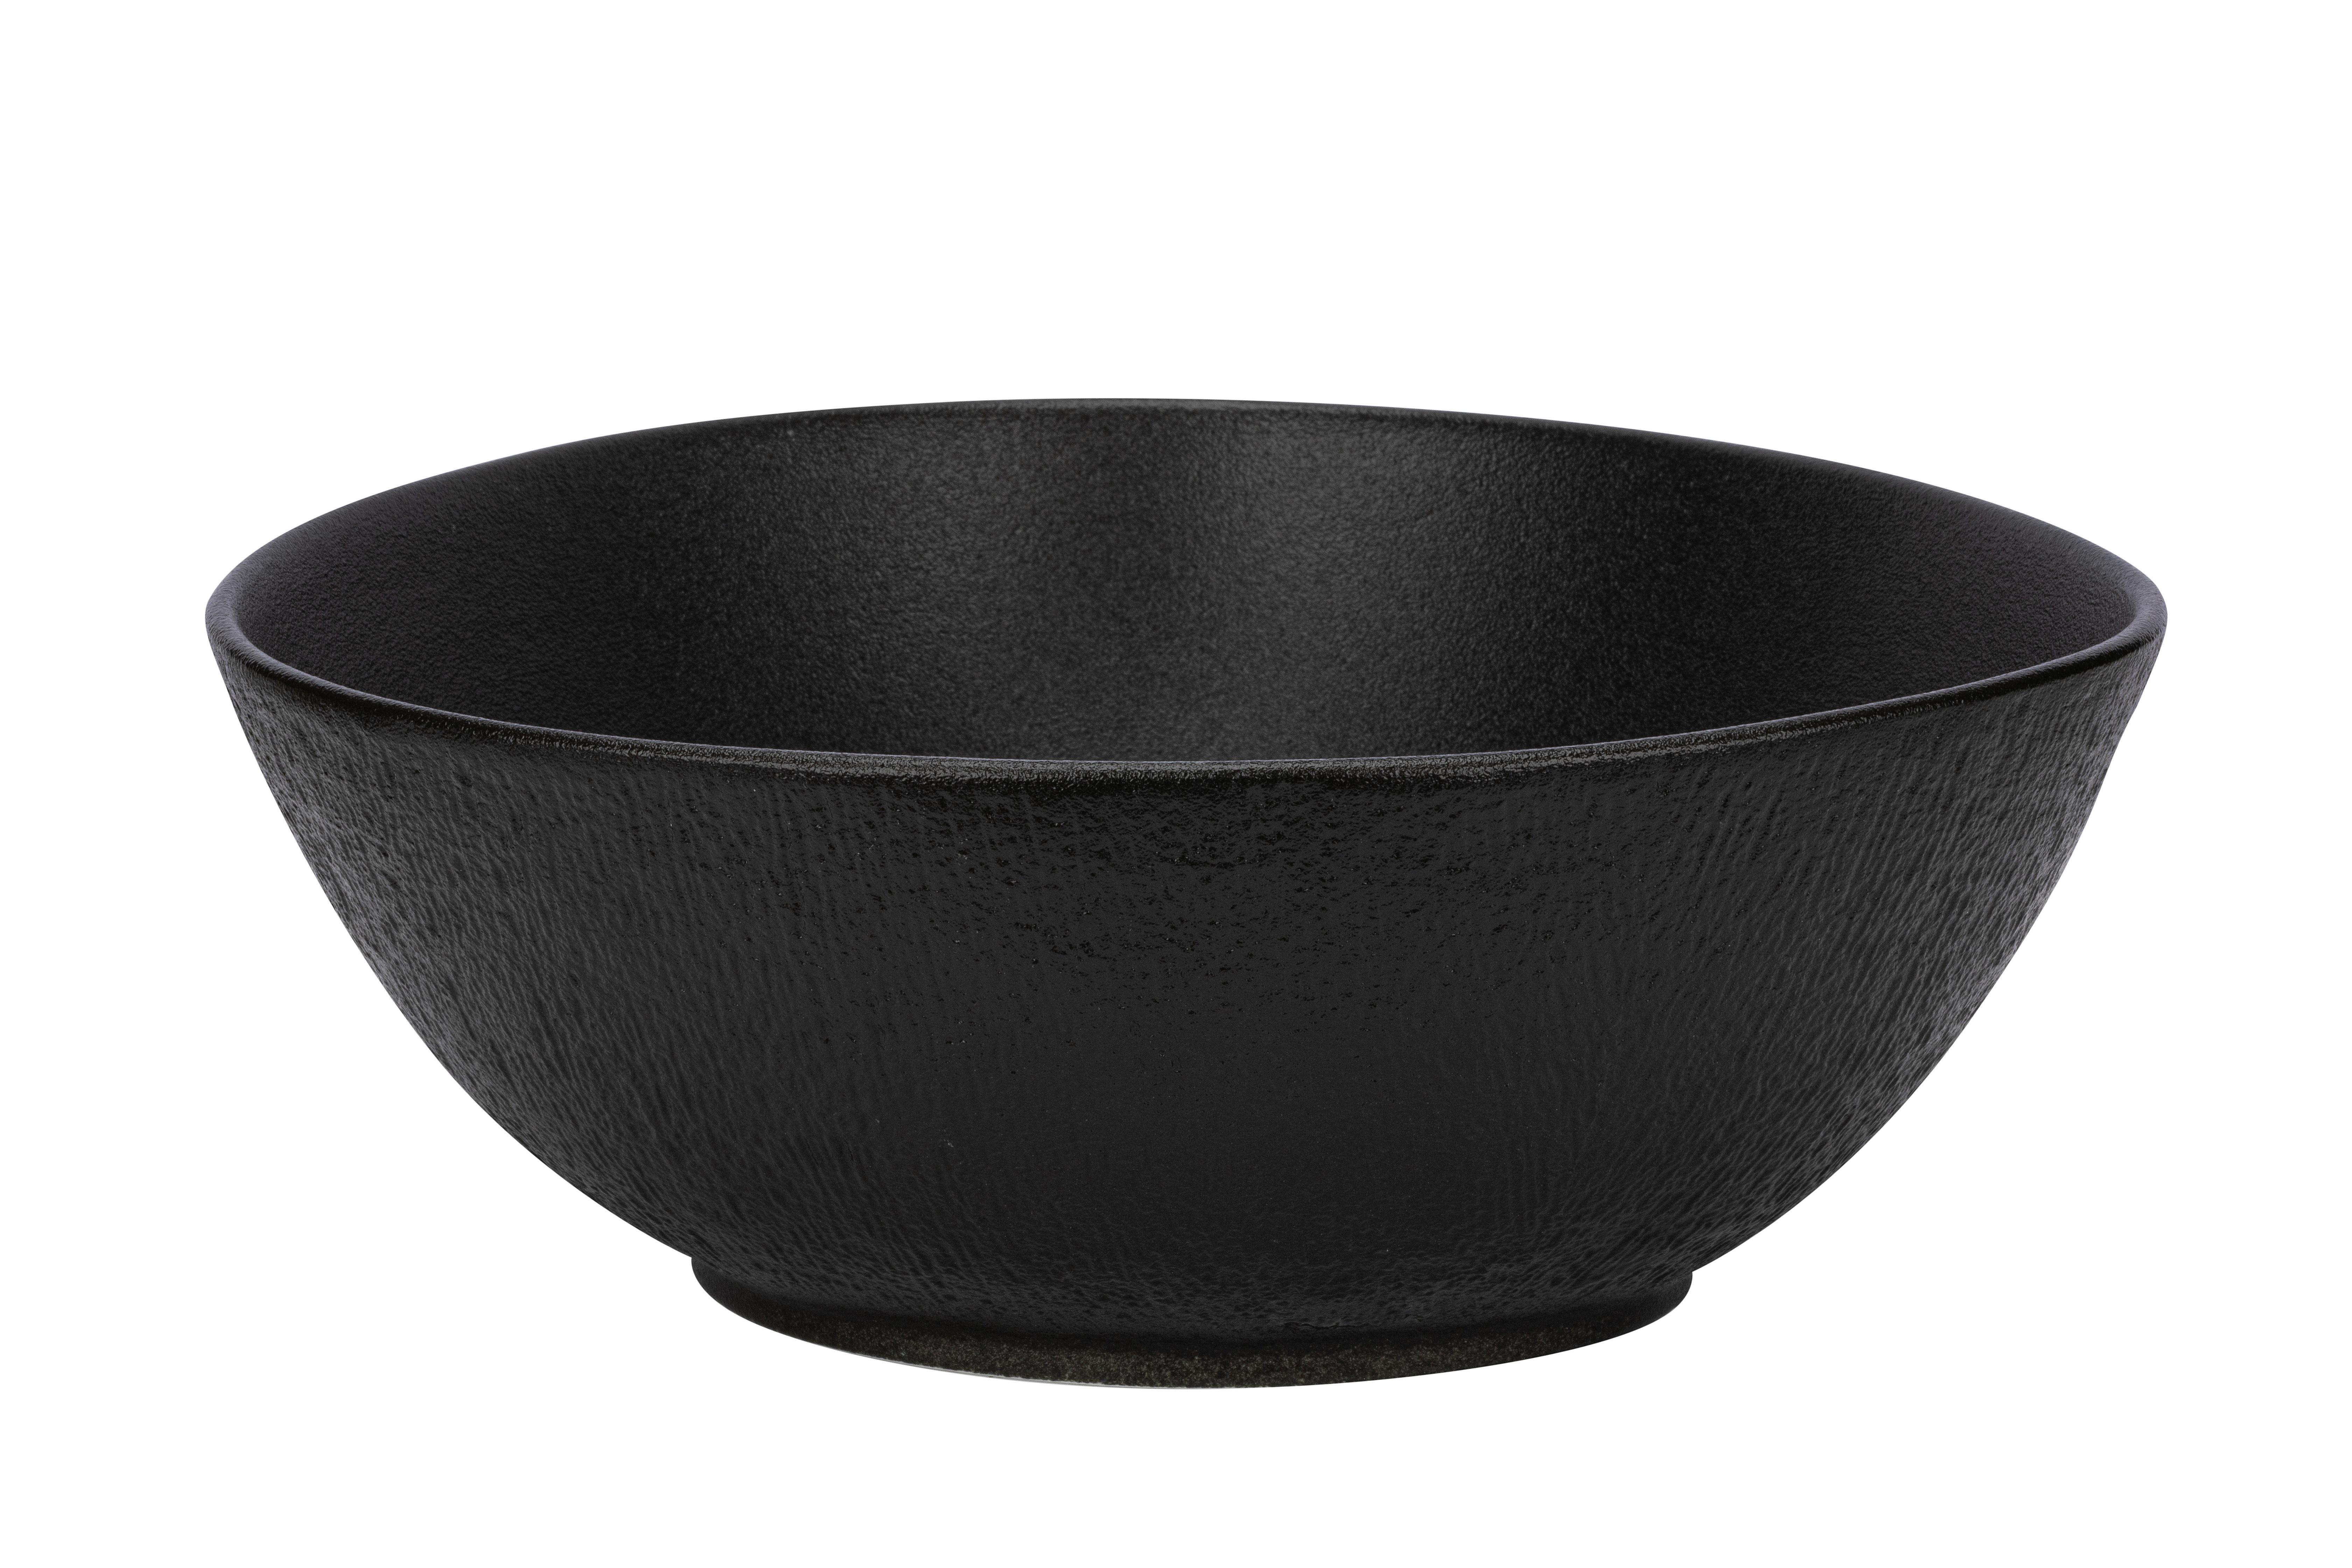 Salátová Mísa Haruki - černá, Moderní, keramika (25,4/23,5/9,5cm) - Premium Living